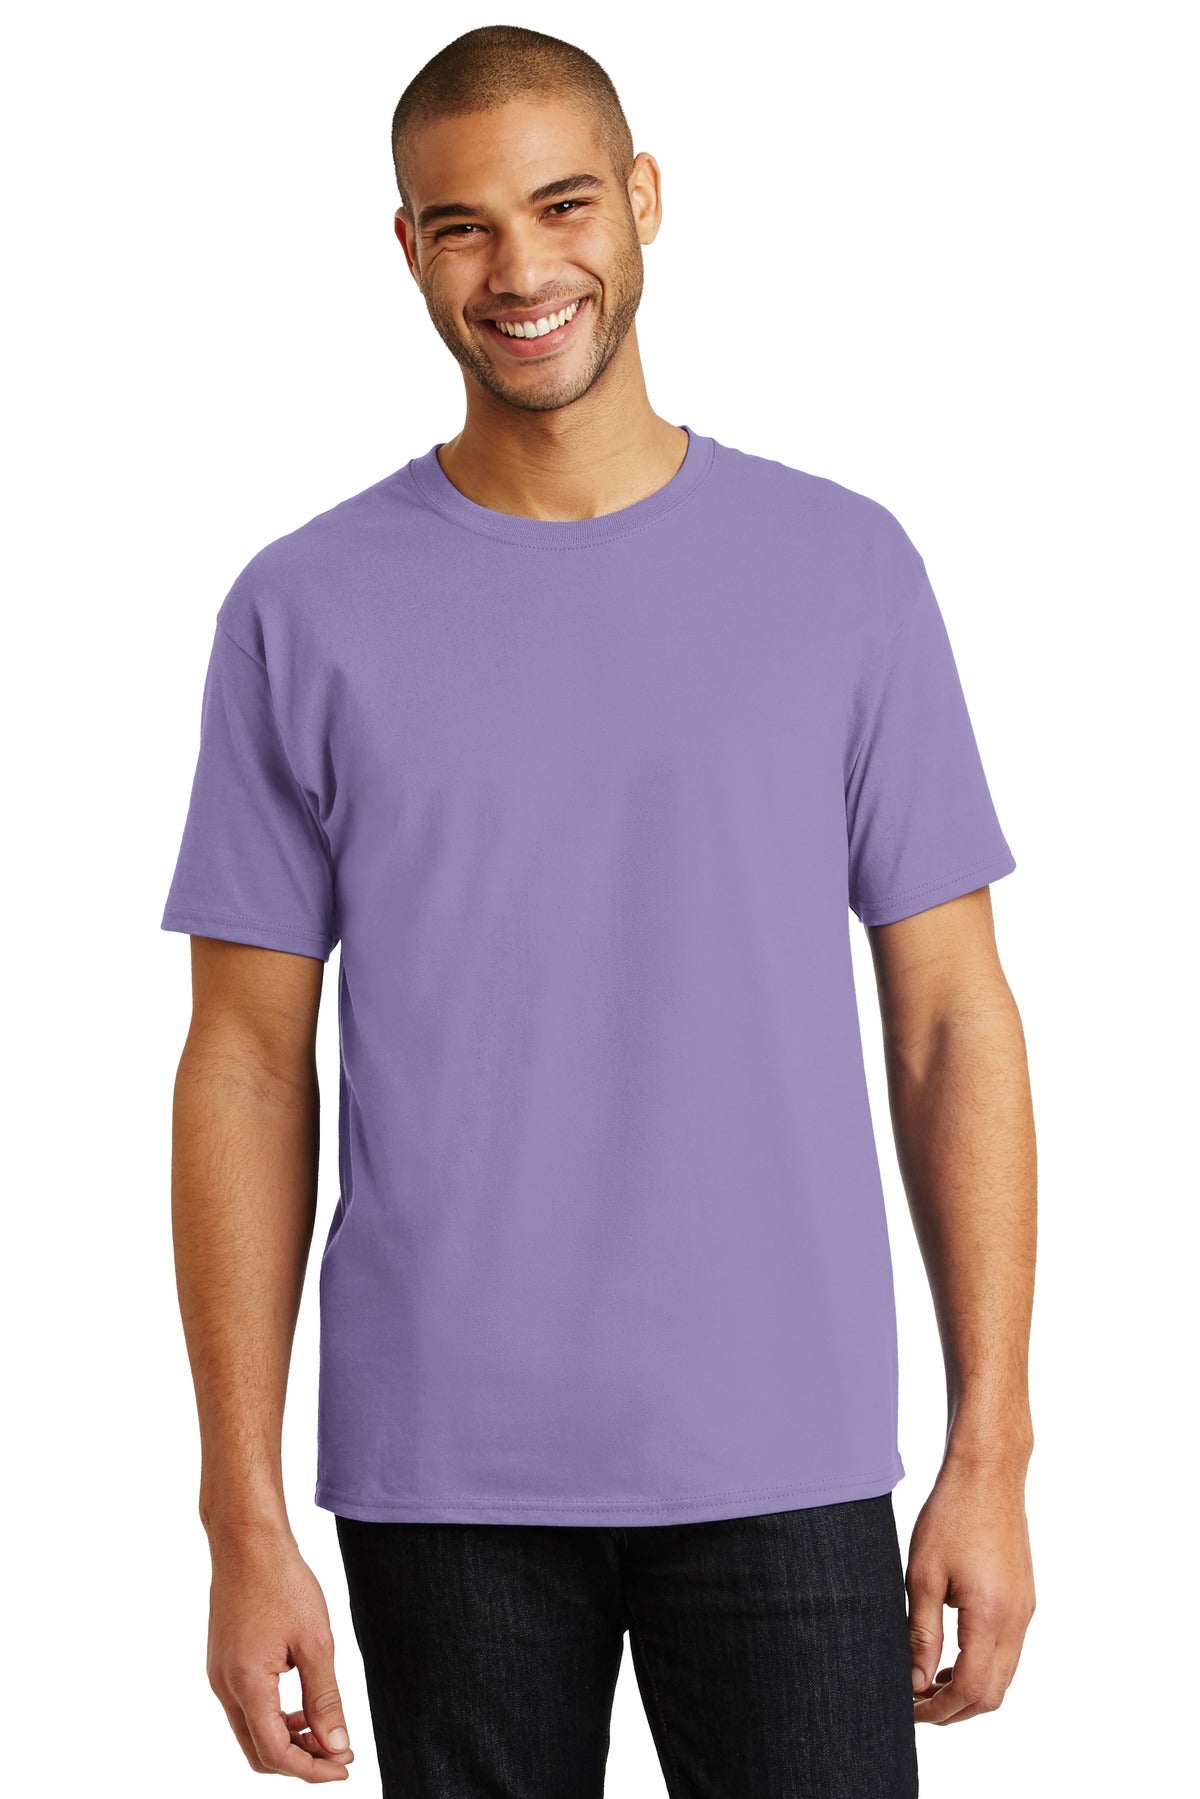 T-Shirts Lavender Hanes